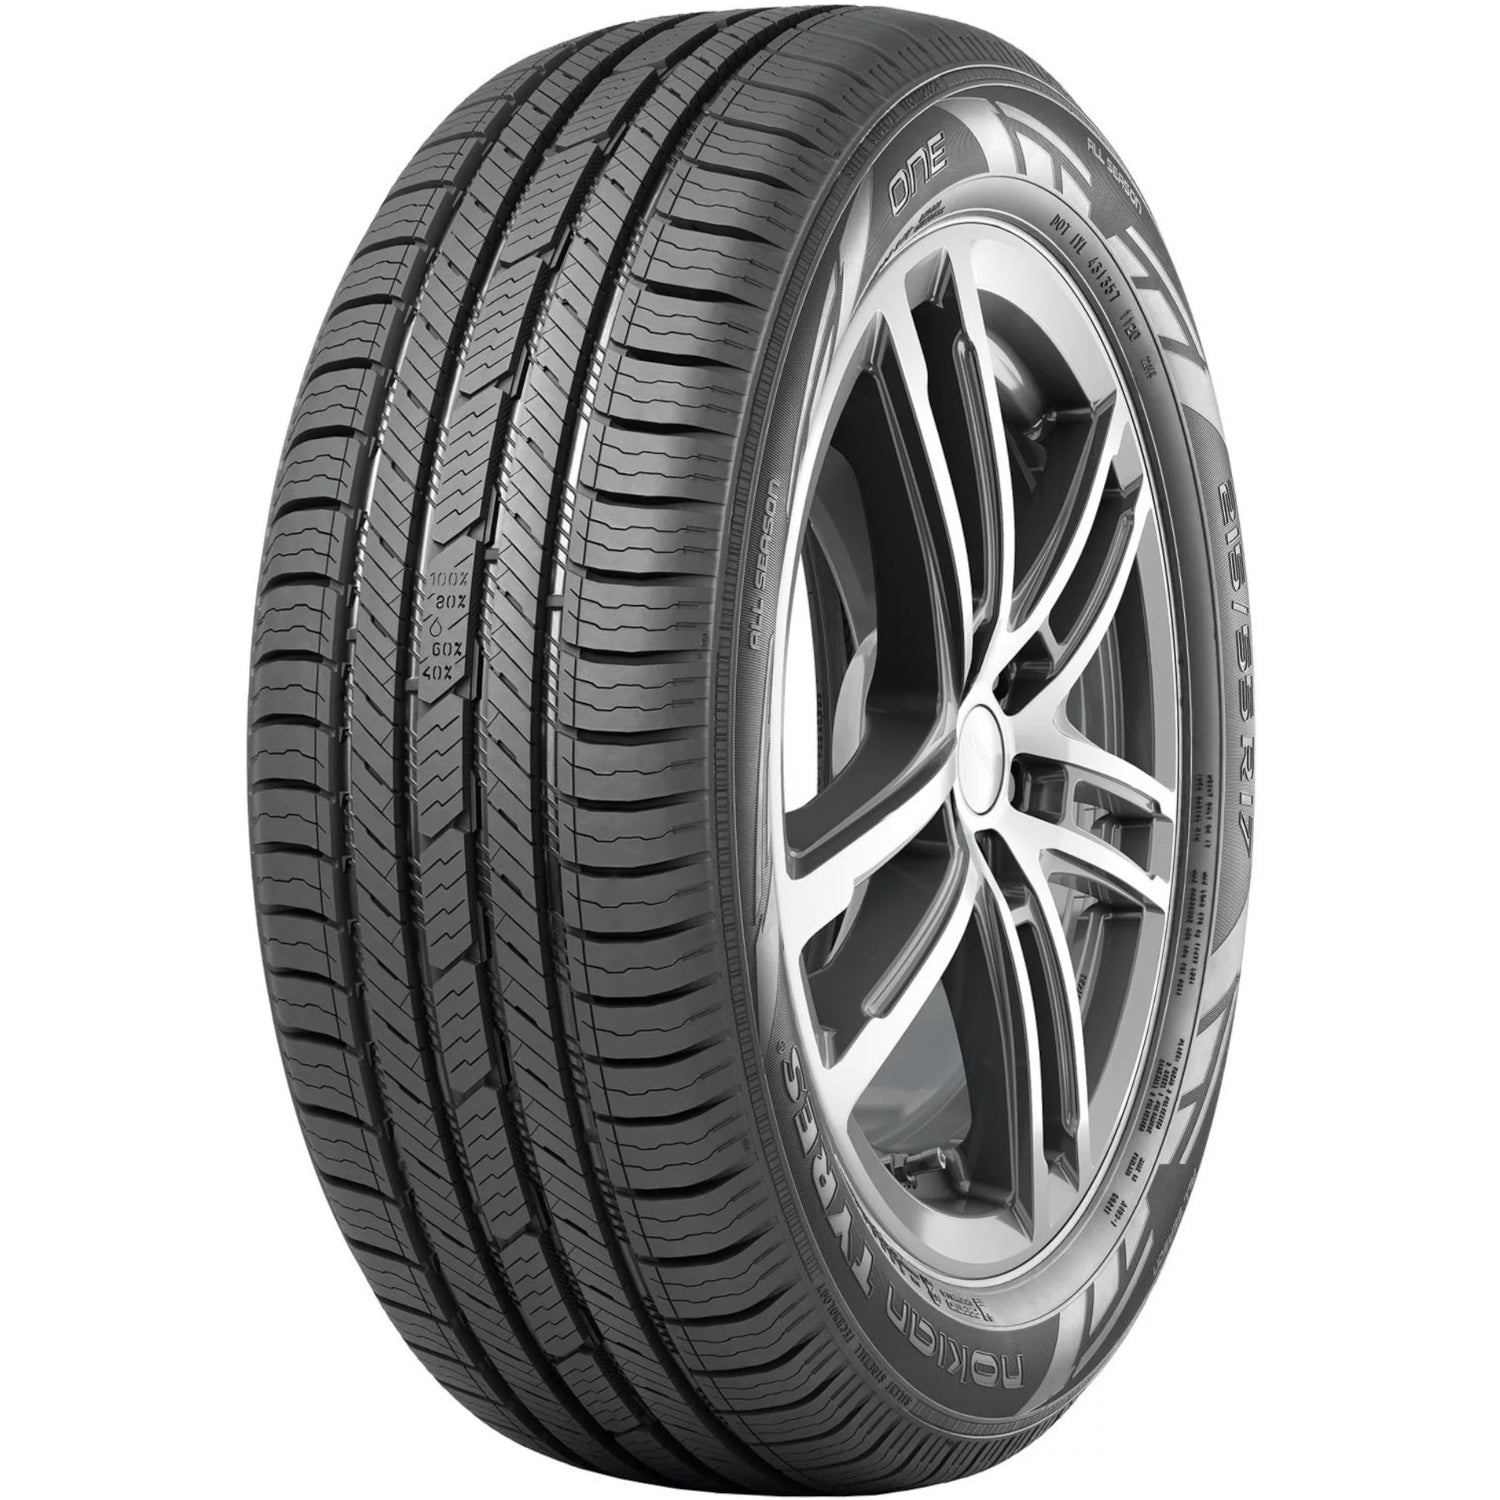 NOKIAN ONE 215/55R18XL (27.3X8.5R 18) Tires